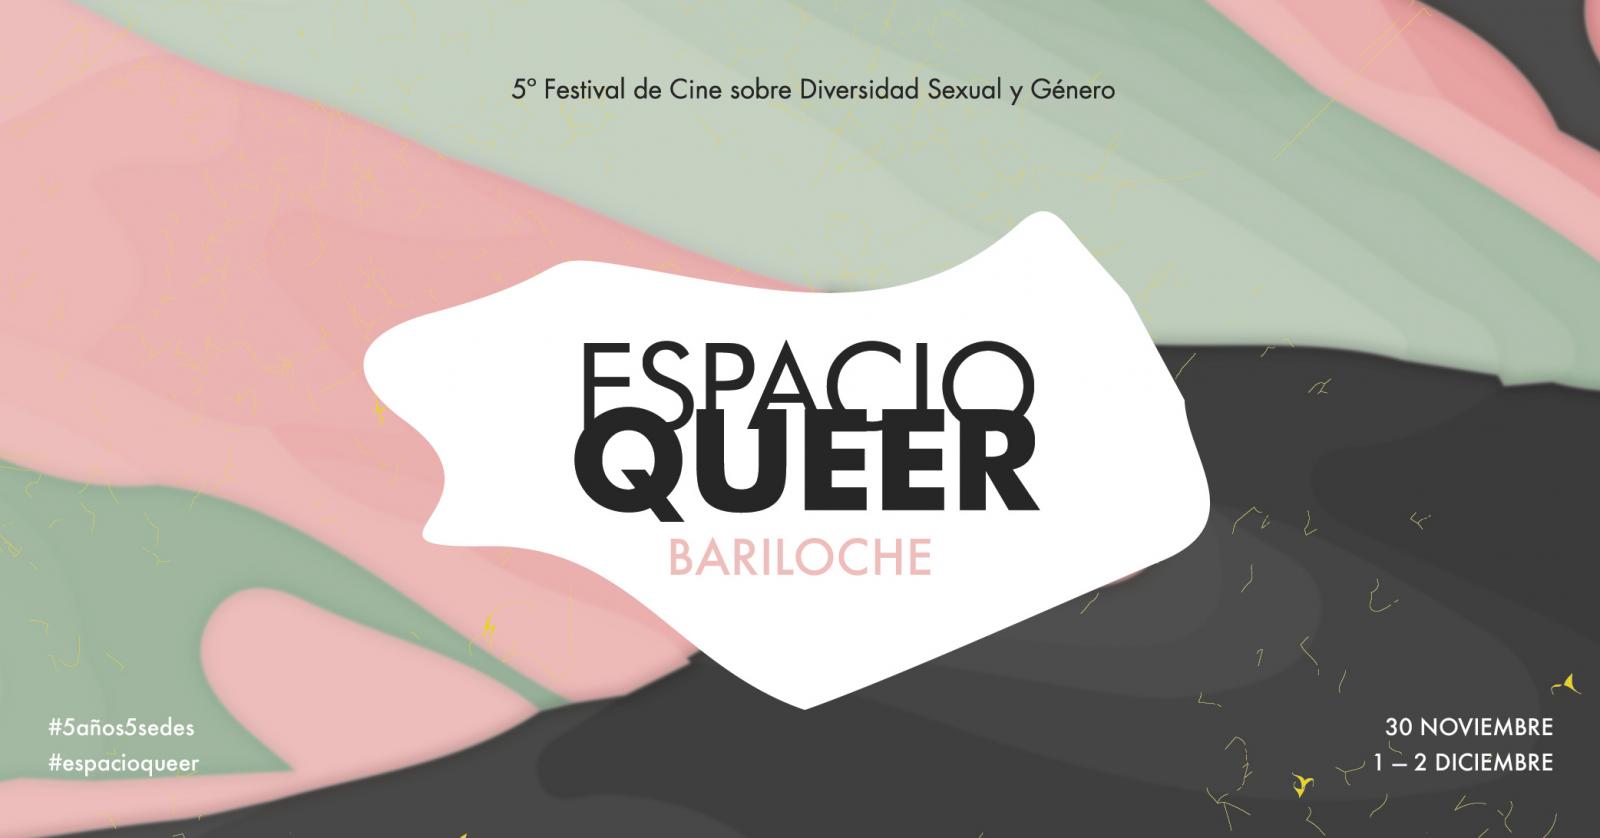 Por primera vez llega Espacio Queer a Bariloche